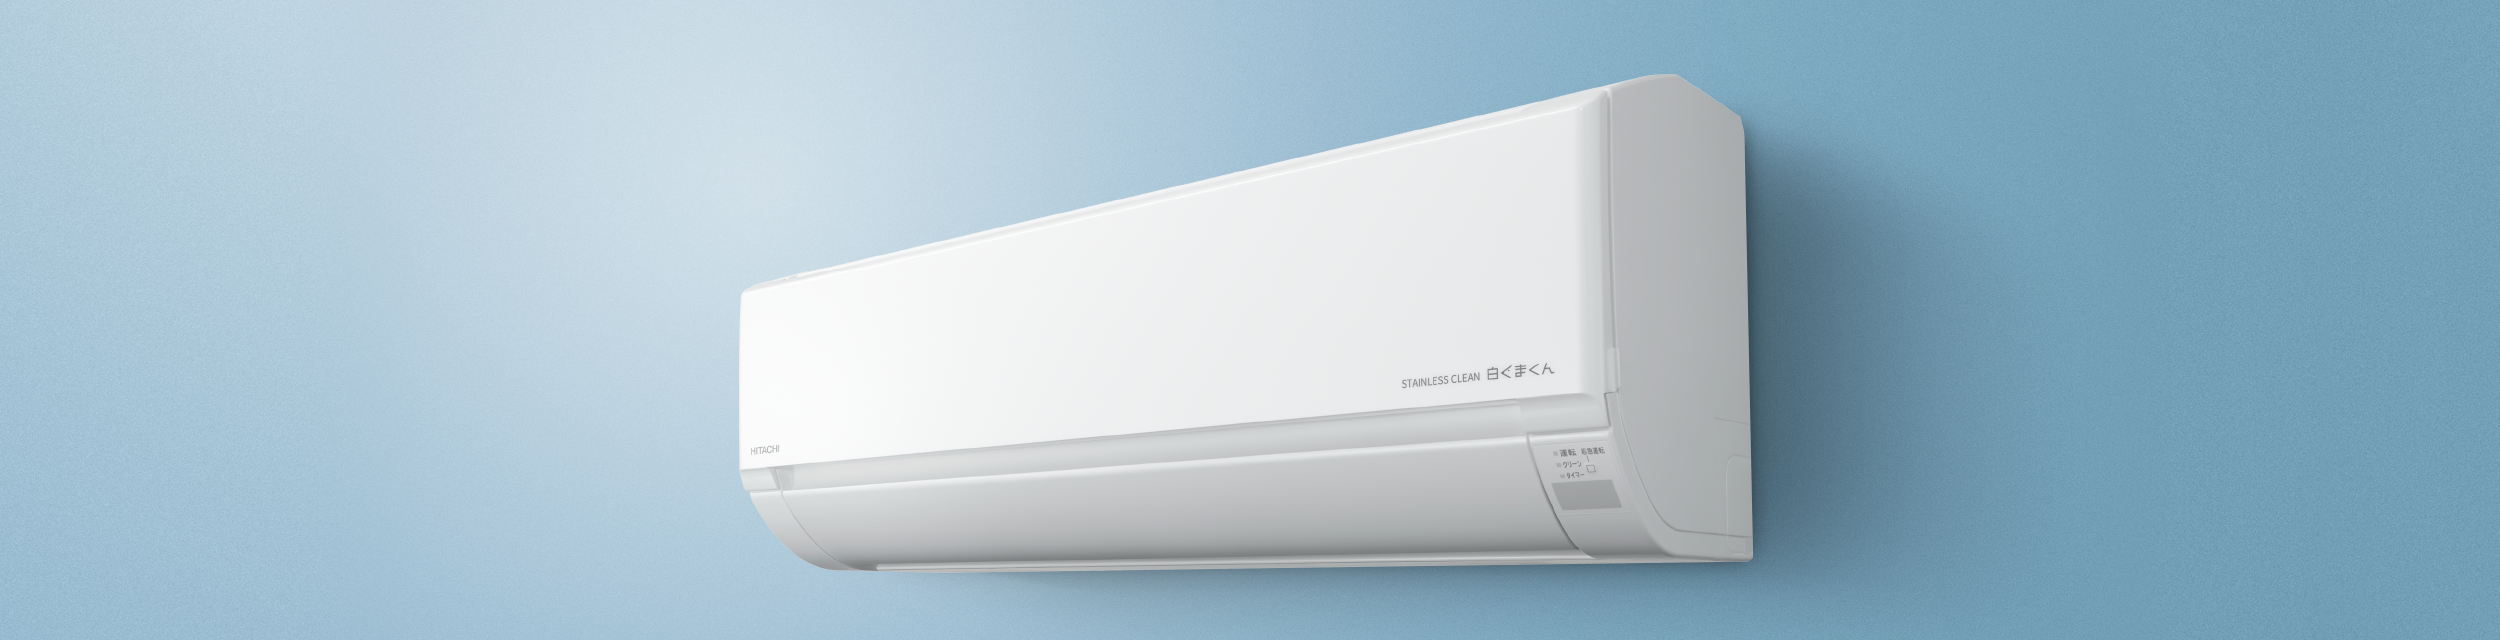 信用 RAS-V40N2-W <br>白くまくん Vシリーズ 日立 ルームエアコン スタンダードモデル 室内機高さ250mmタイプ 冷房 暖房 